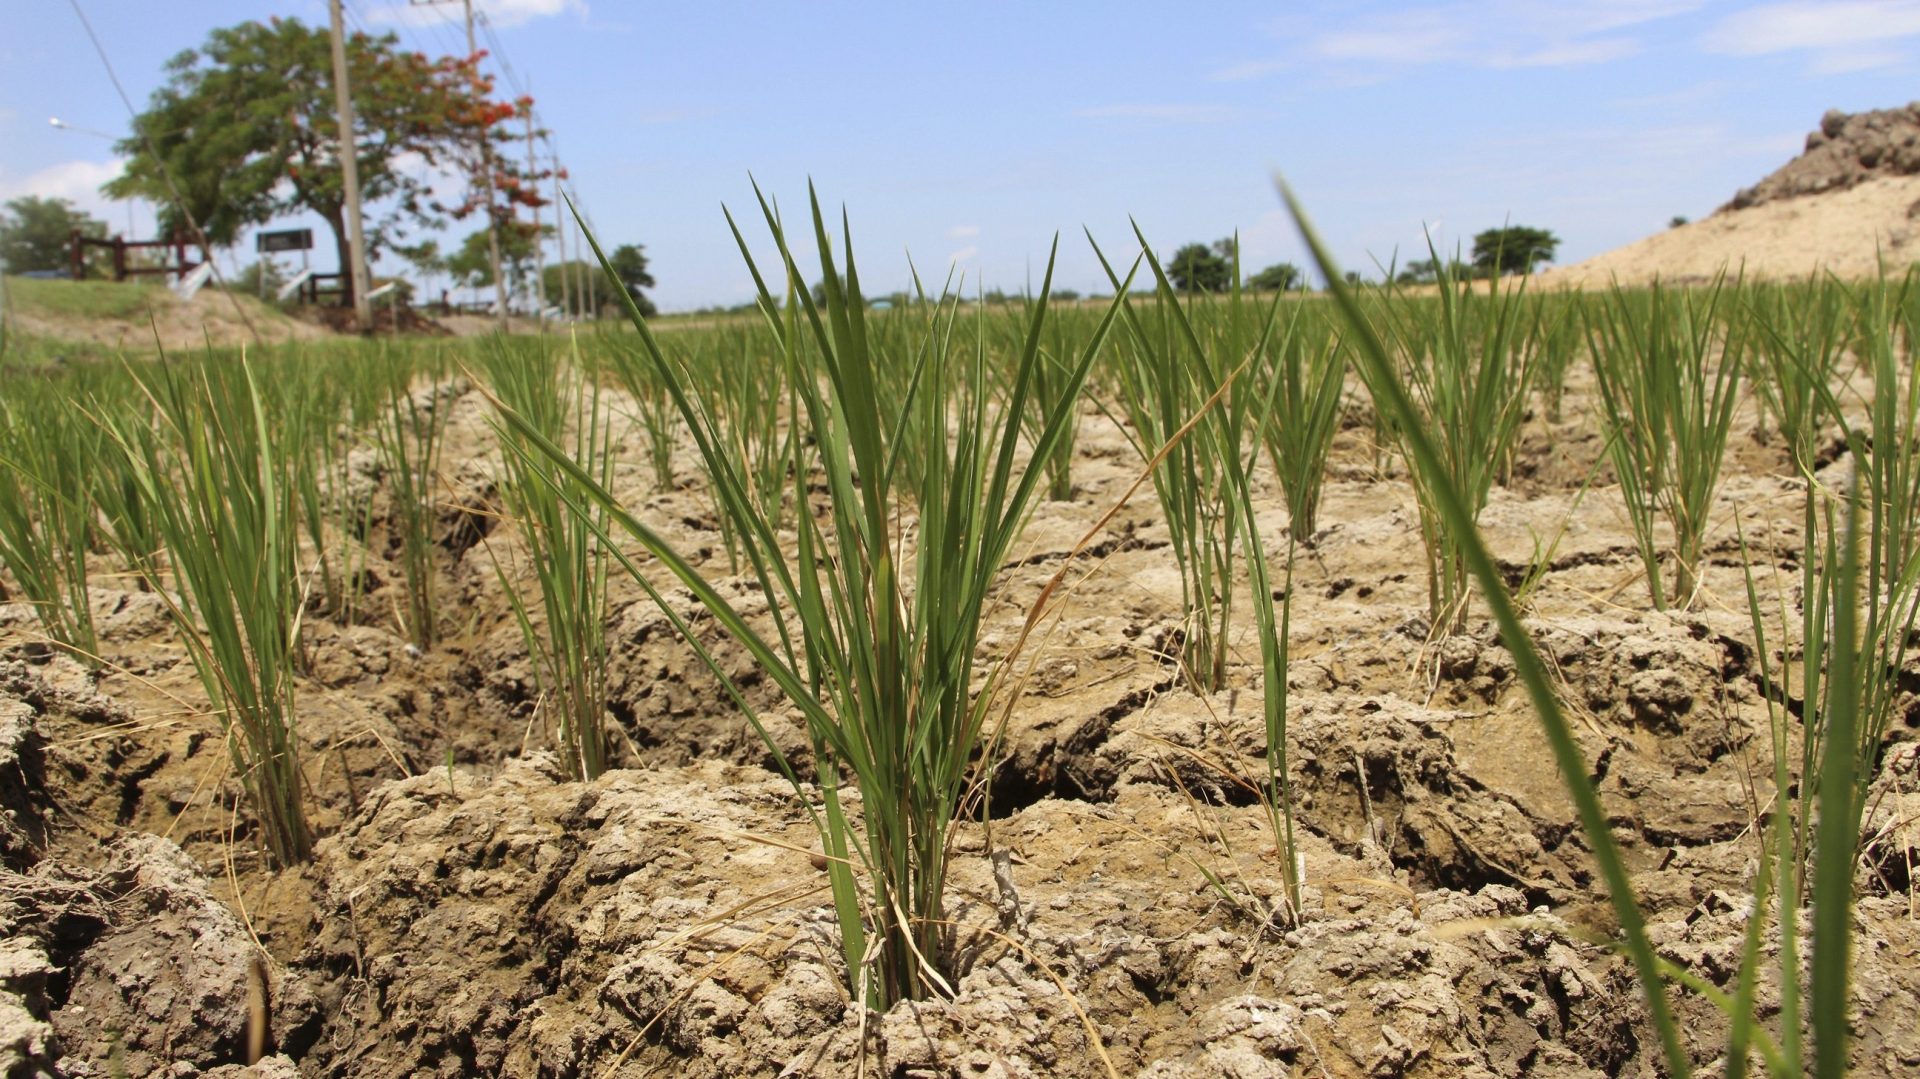 Efectos de la sequía en un campo de cultivo. EFE/Gaspar Ruiz-Canela